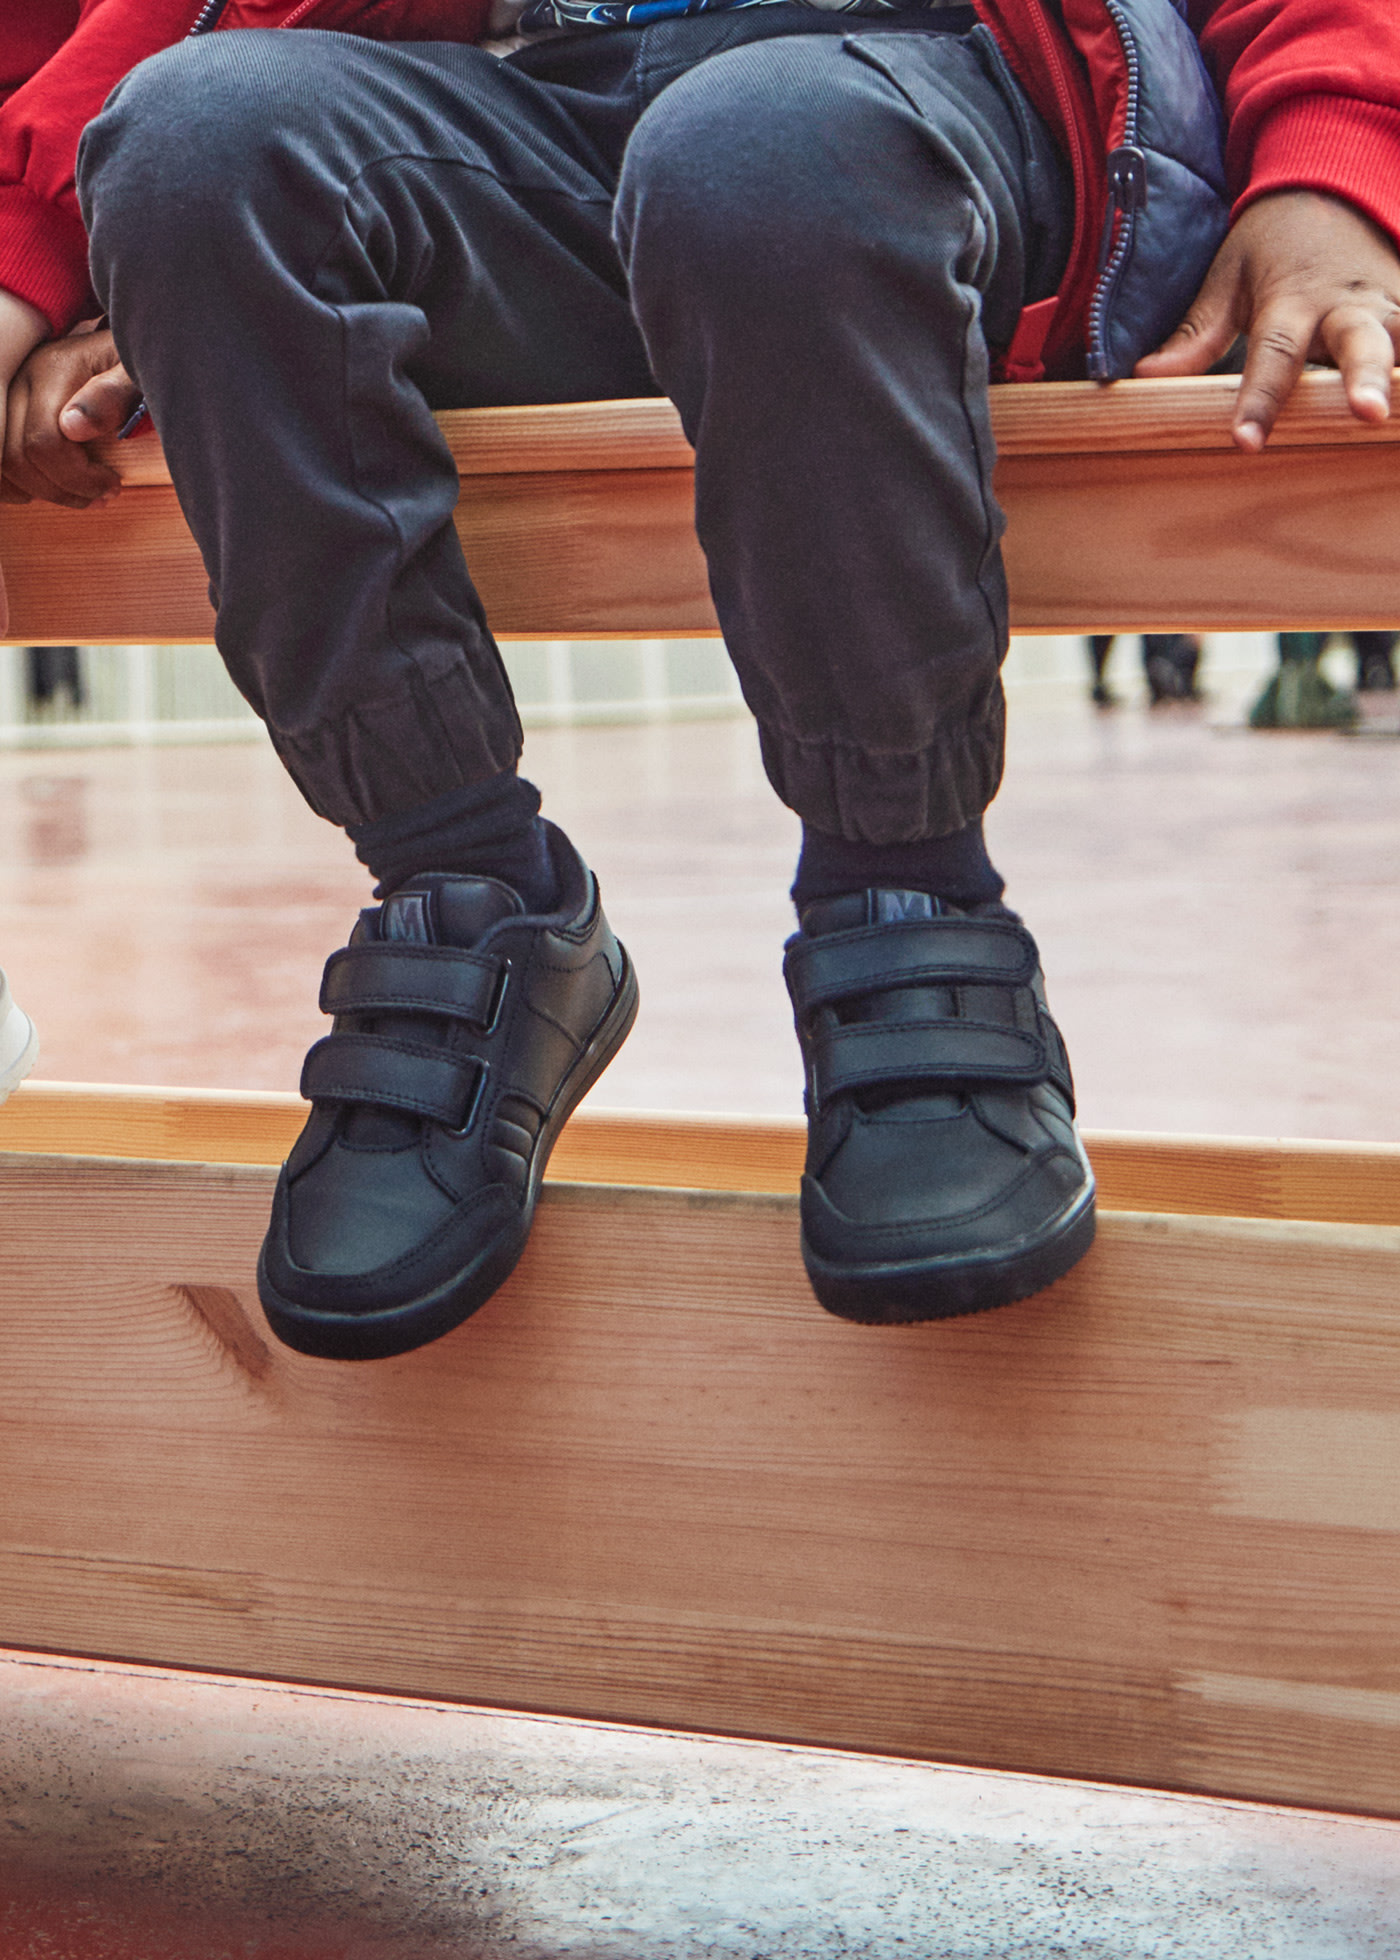 Buty sportowe skórzane zapinane na podwójny rzep dla chłopca